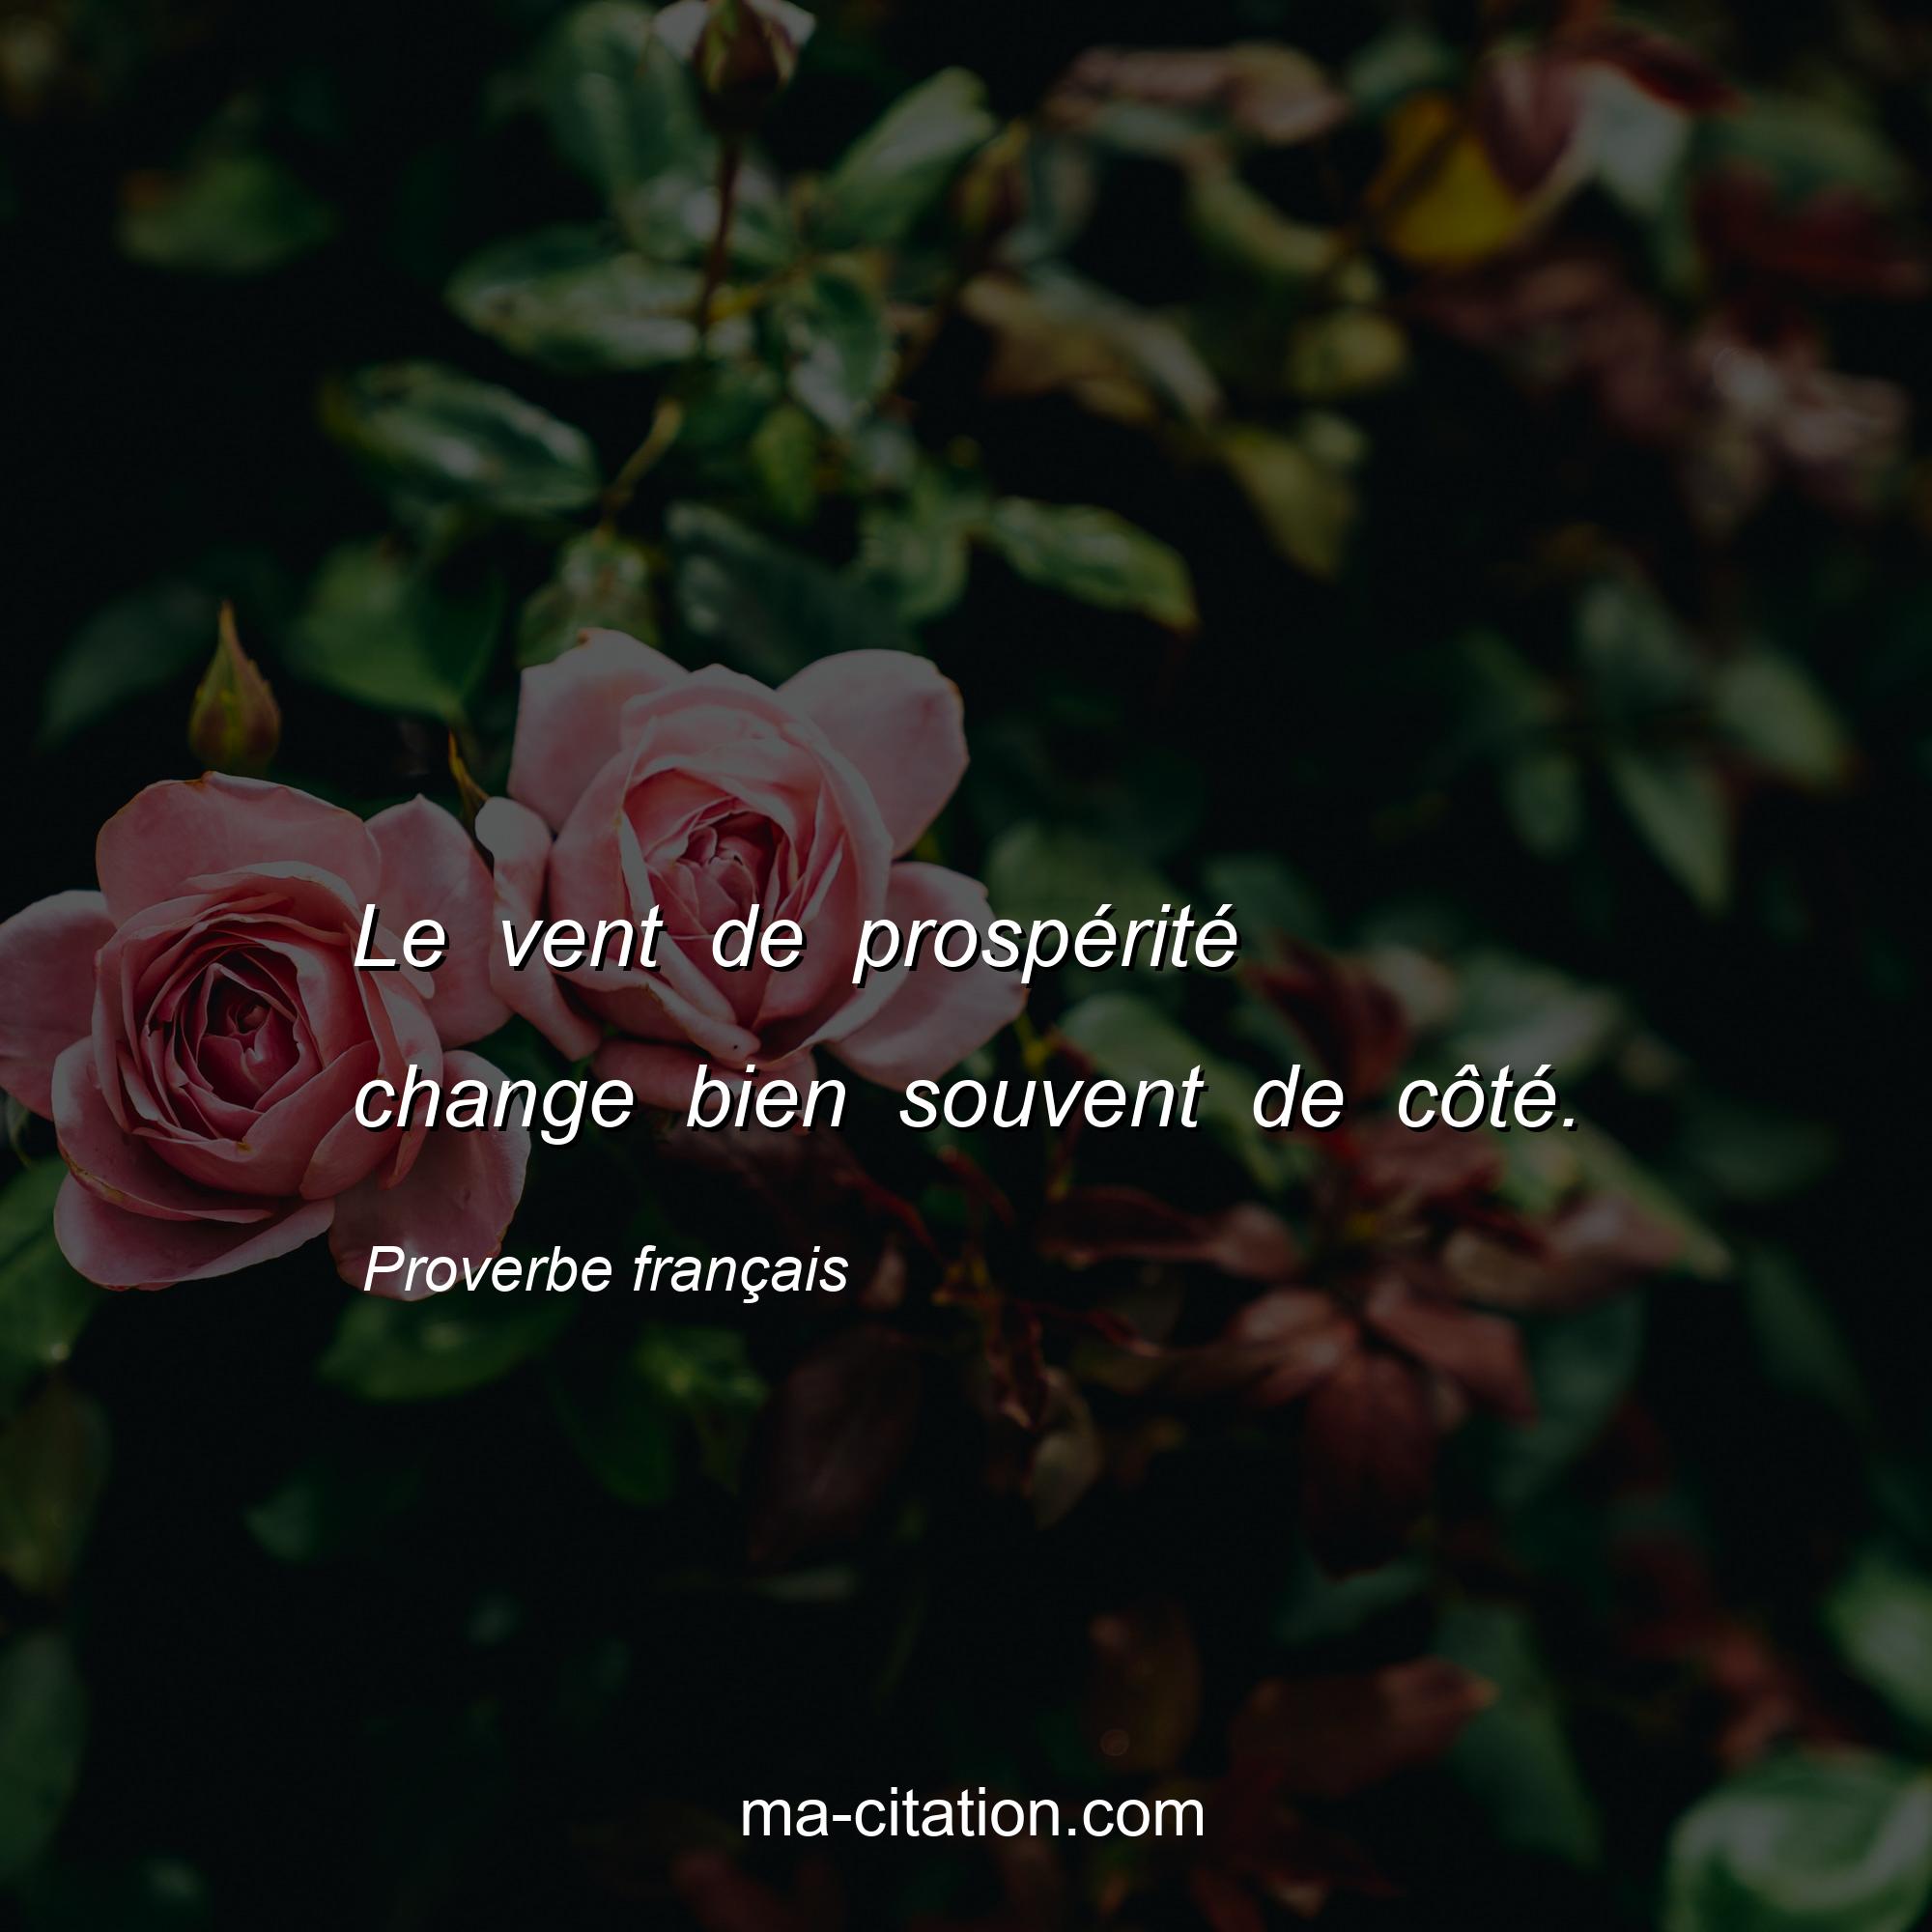 Proverbe français : Le vent de prospérité change bien souvent de côté.